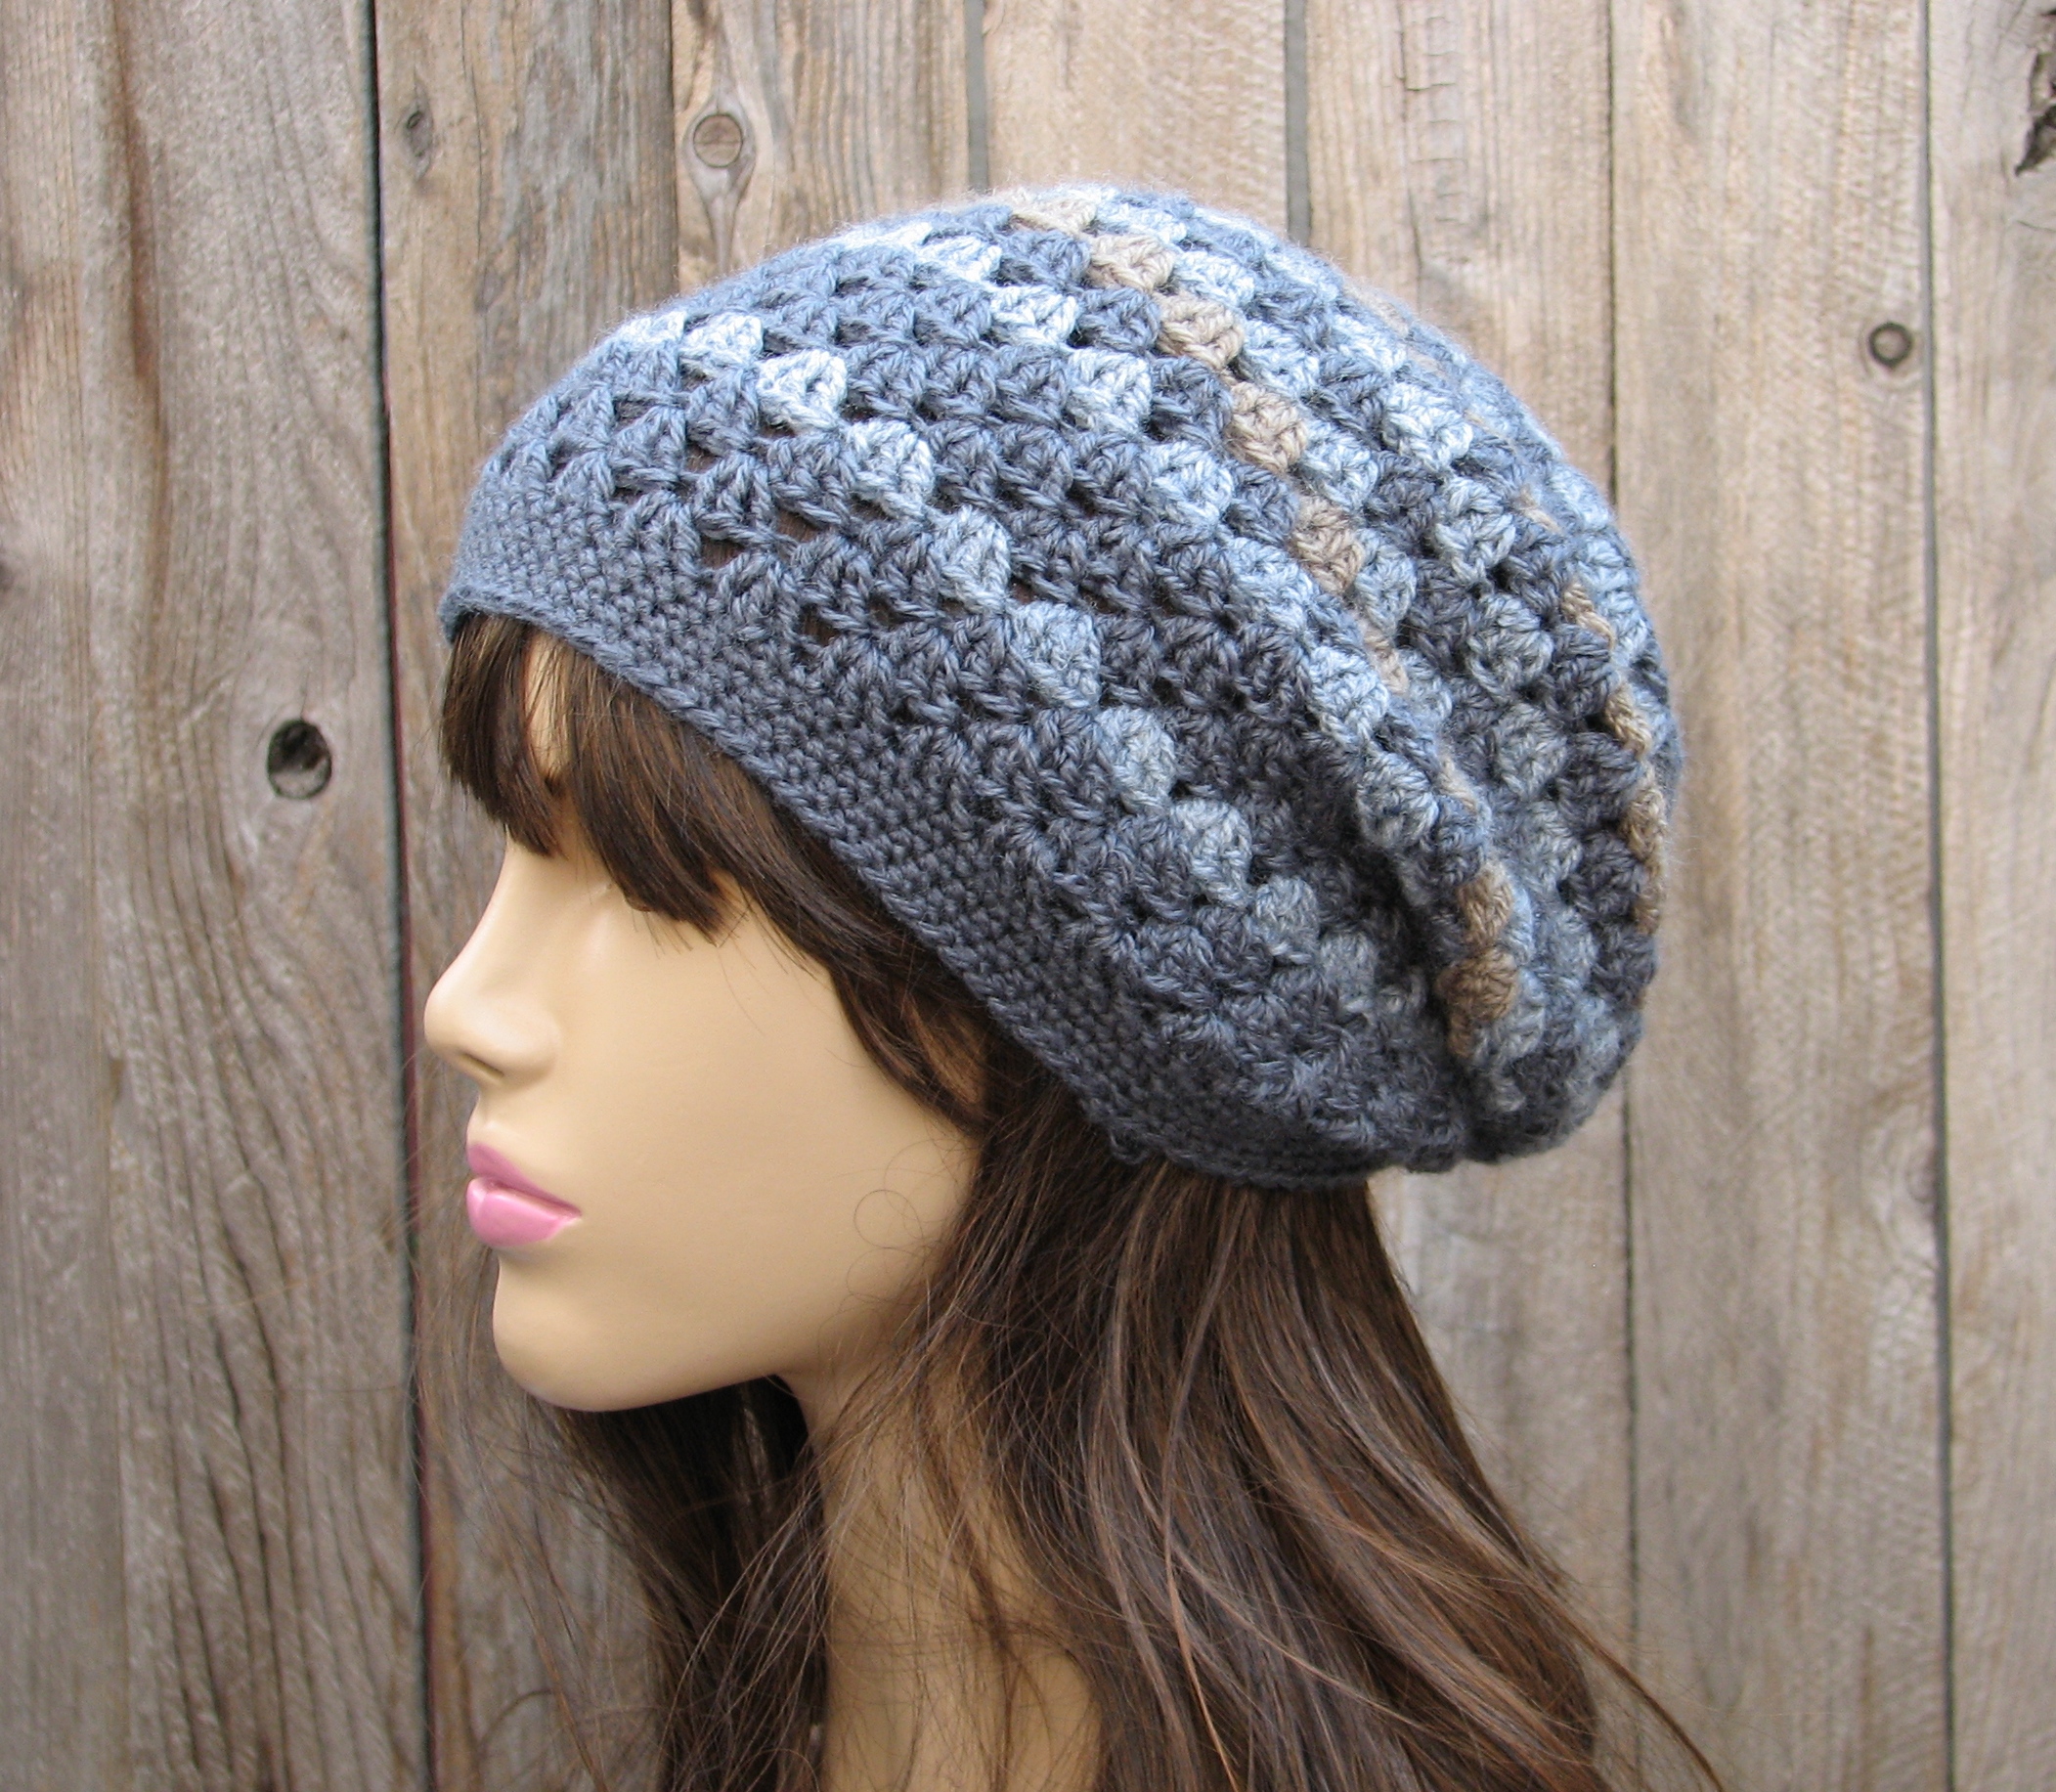 Crochet Hat - Slouchy Hat, Crochet Pattern Pdf,easy, Great For ...